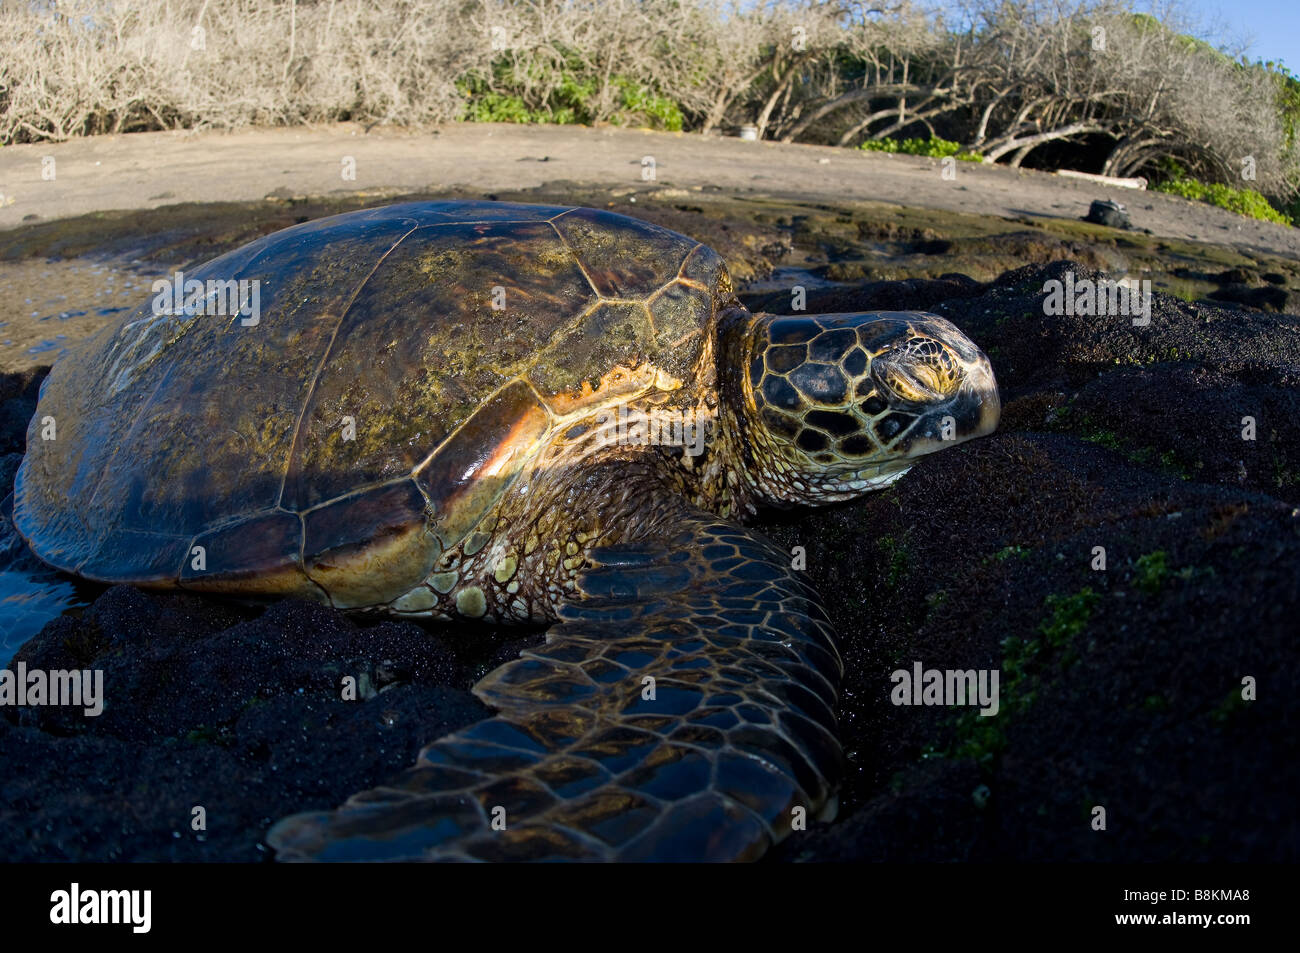 Hawaiian Green Turtle Chelonia mydas Big Island Hawaii Stock Photo